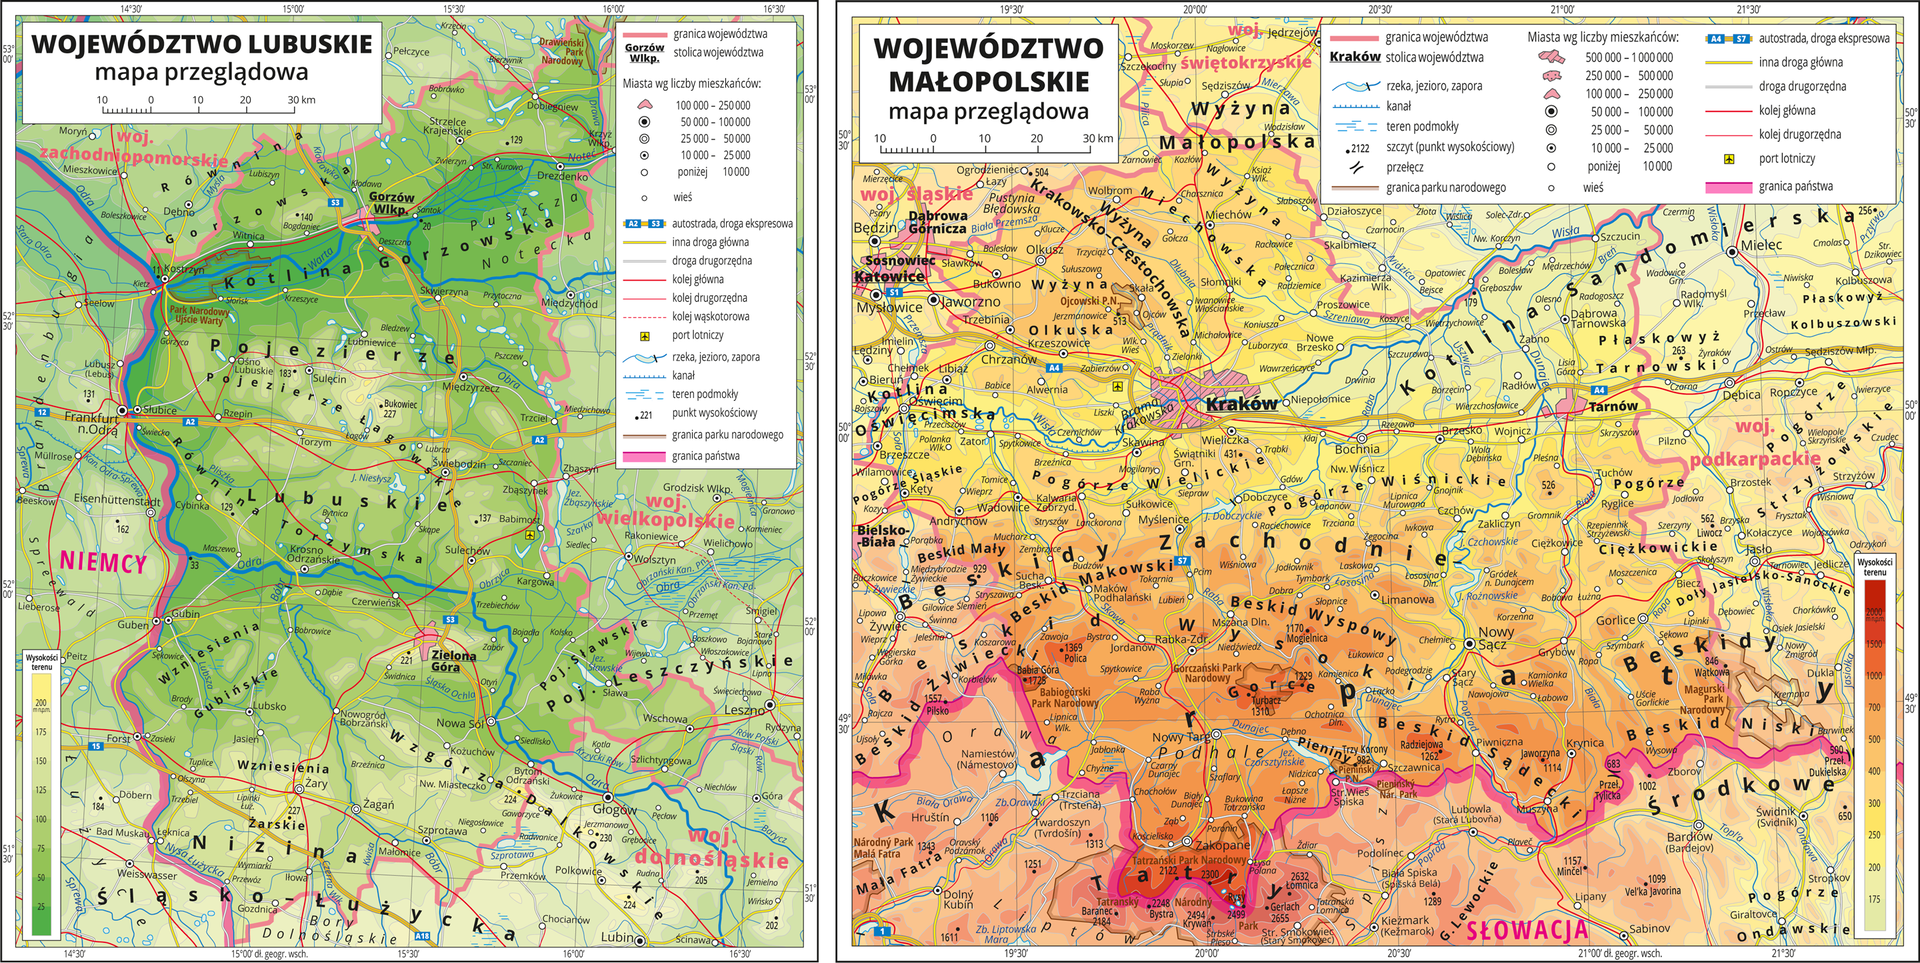 Ilustracja przedstawia dwie mapy poziomicowe. Od lewej mapa terenu równinnego, na którym widoczny jest kolor: ciemnozielony, zielony i jasnozielony. Po prawej stronie widoczna mapa terenu wyżynnego i górzystego, na którym widoczny jest kolor: żółty, pomarańczowy, brązowy, ciemnobrązowy i czerwony.